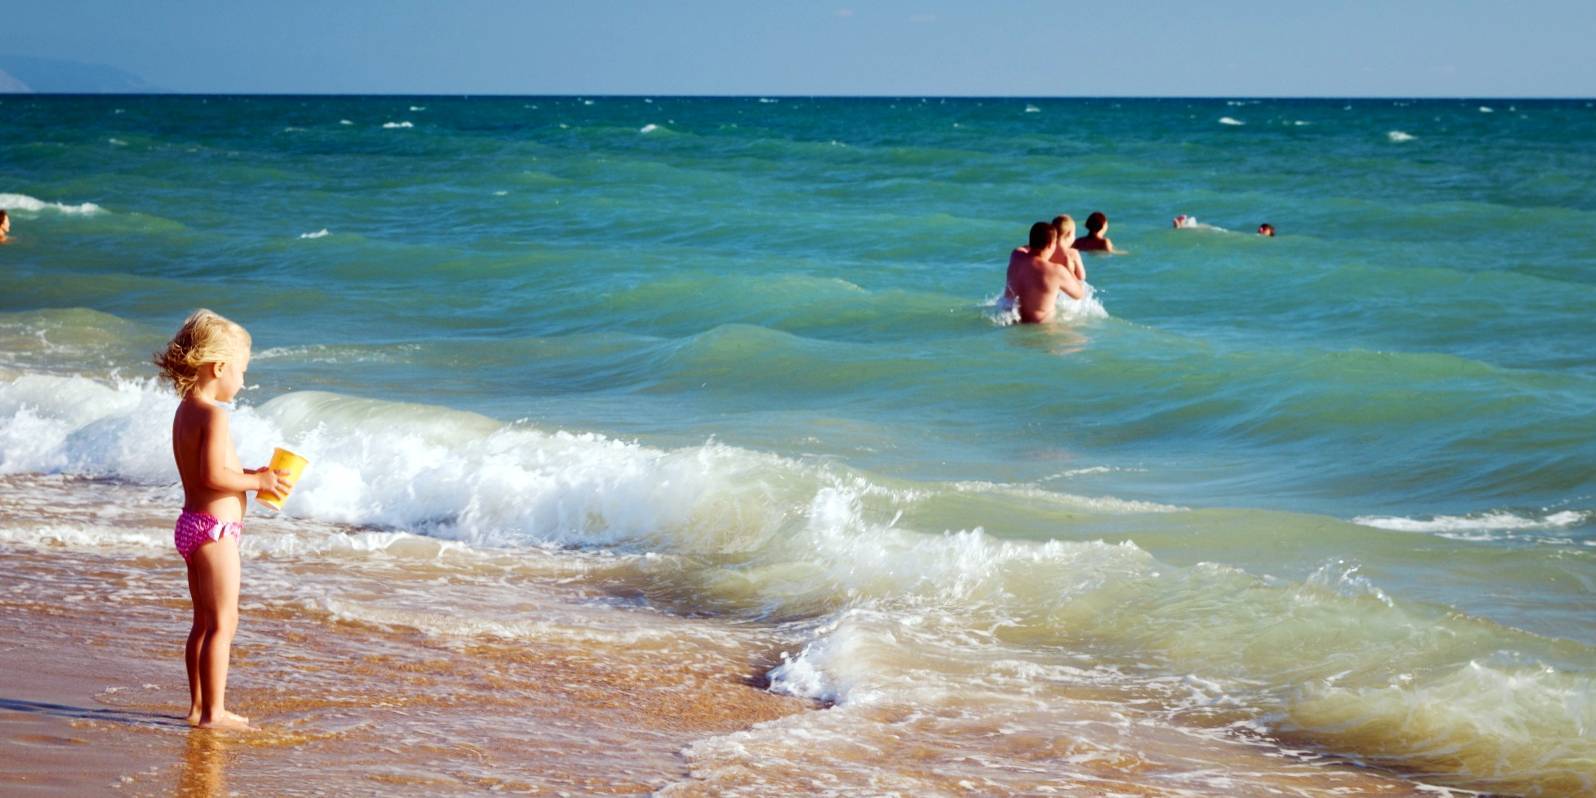 Абхазия май купаться. Анапа для детей. Черное море пляж люди. Купание в море. Анапа дети море.